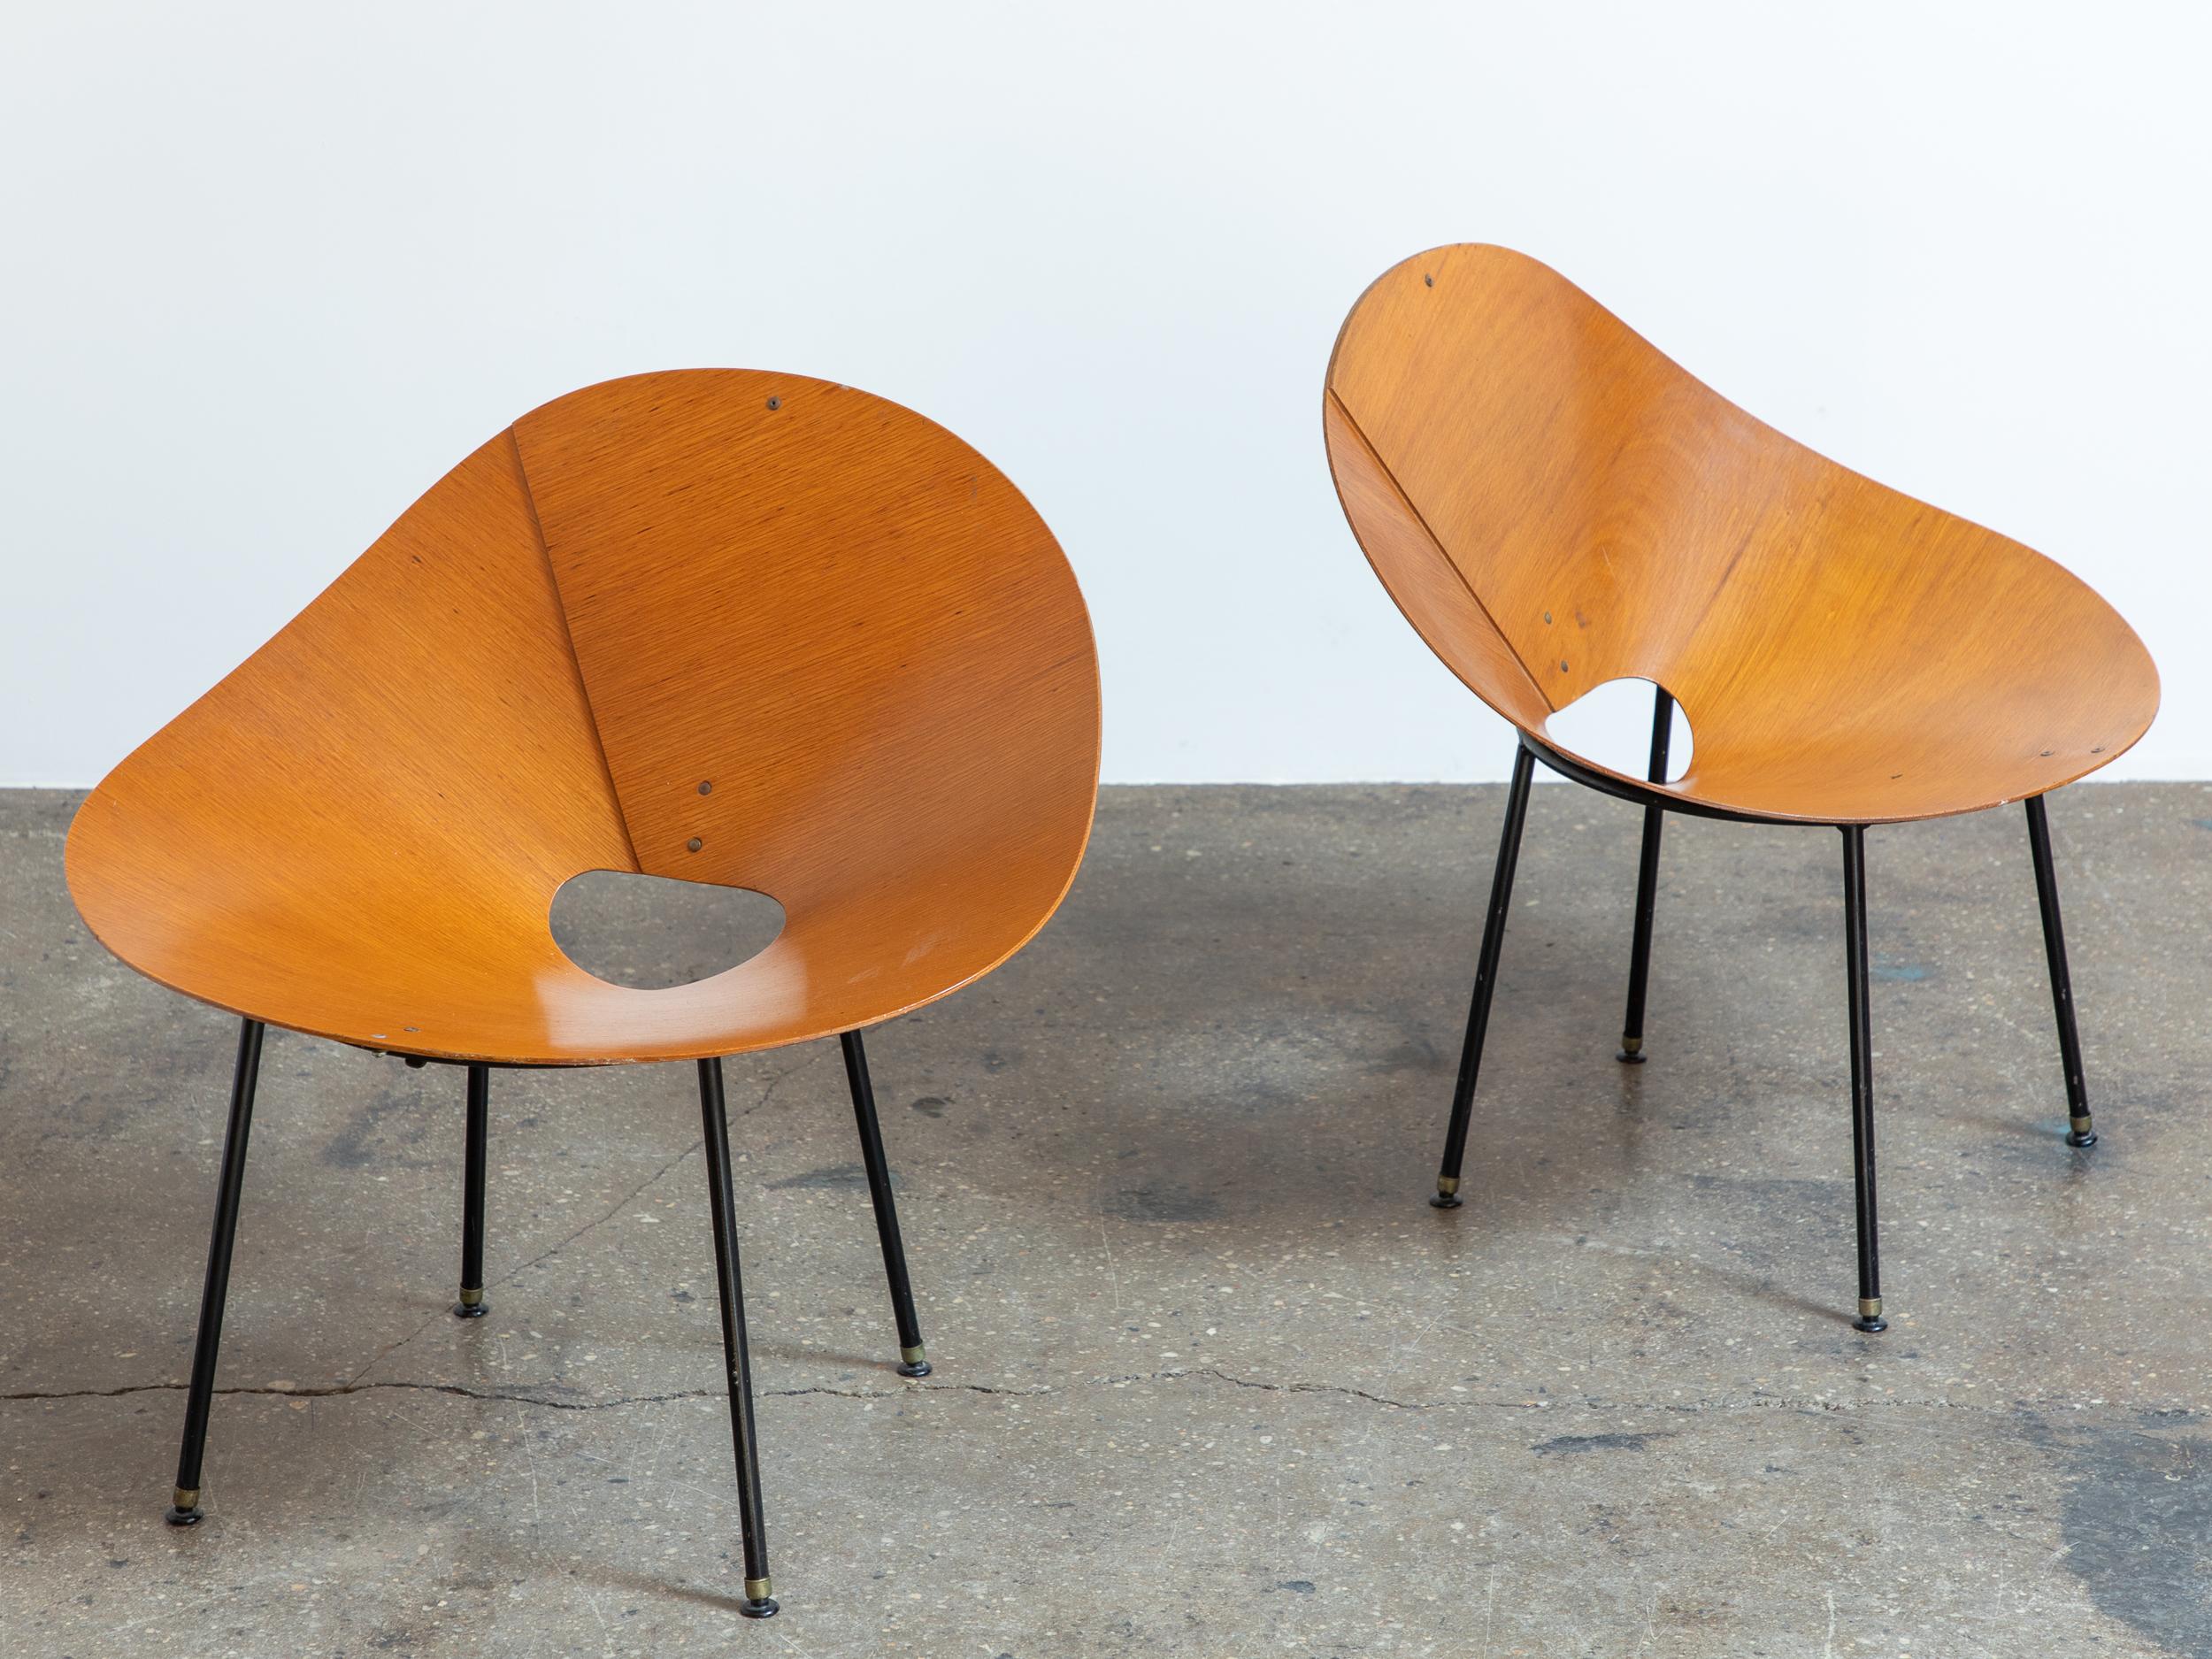 Seltene Kone Lounge Chairs, entworfen vom australischen Industriedesigner Roger McLay. Der Sitz wird aus einer einzigen Sperrholzplatte geformt, die in eine schlanke Kegelform gebogen wird. Der schwarze Stahlrahmen bietet einen stabilen Halt.  Die